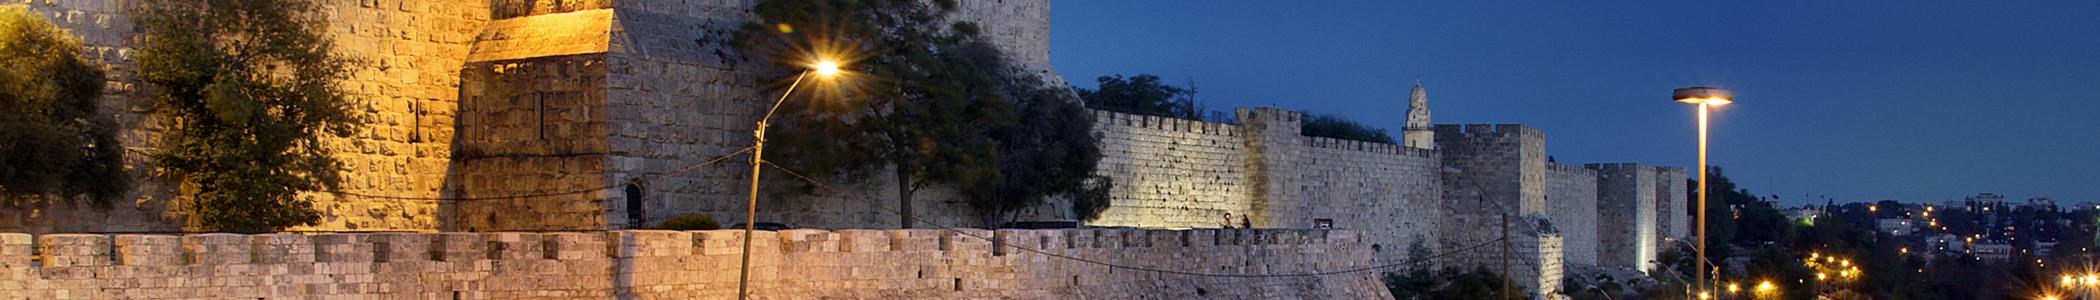 Banner image for Jerusalem on GigsGuide